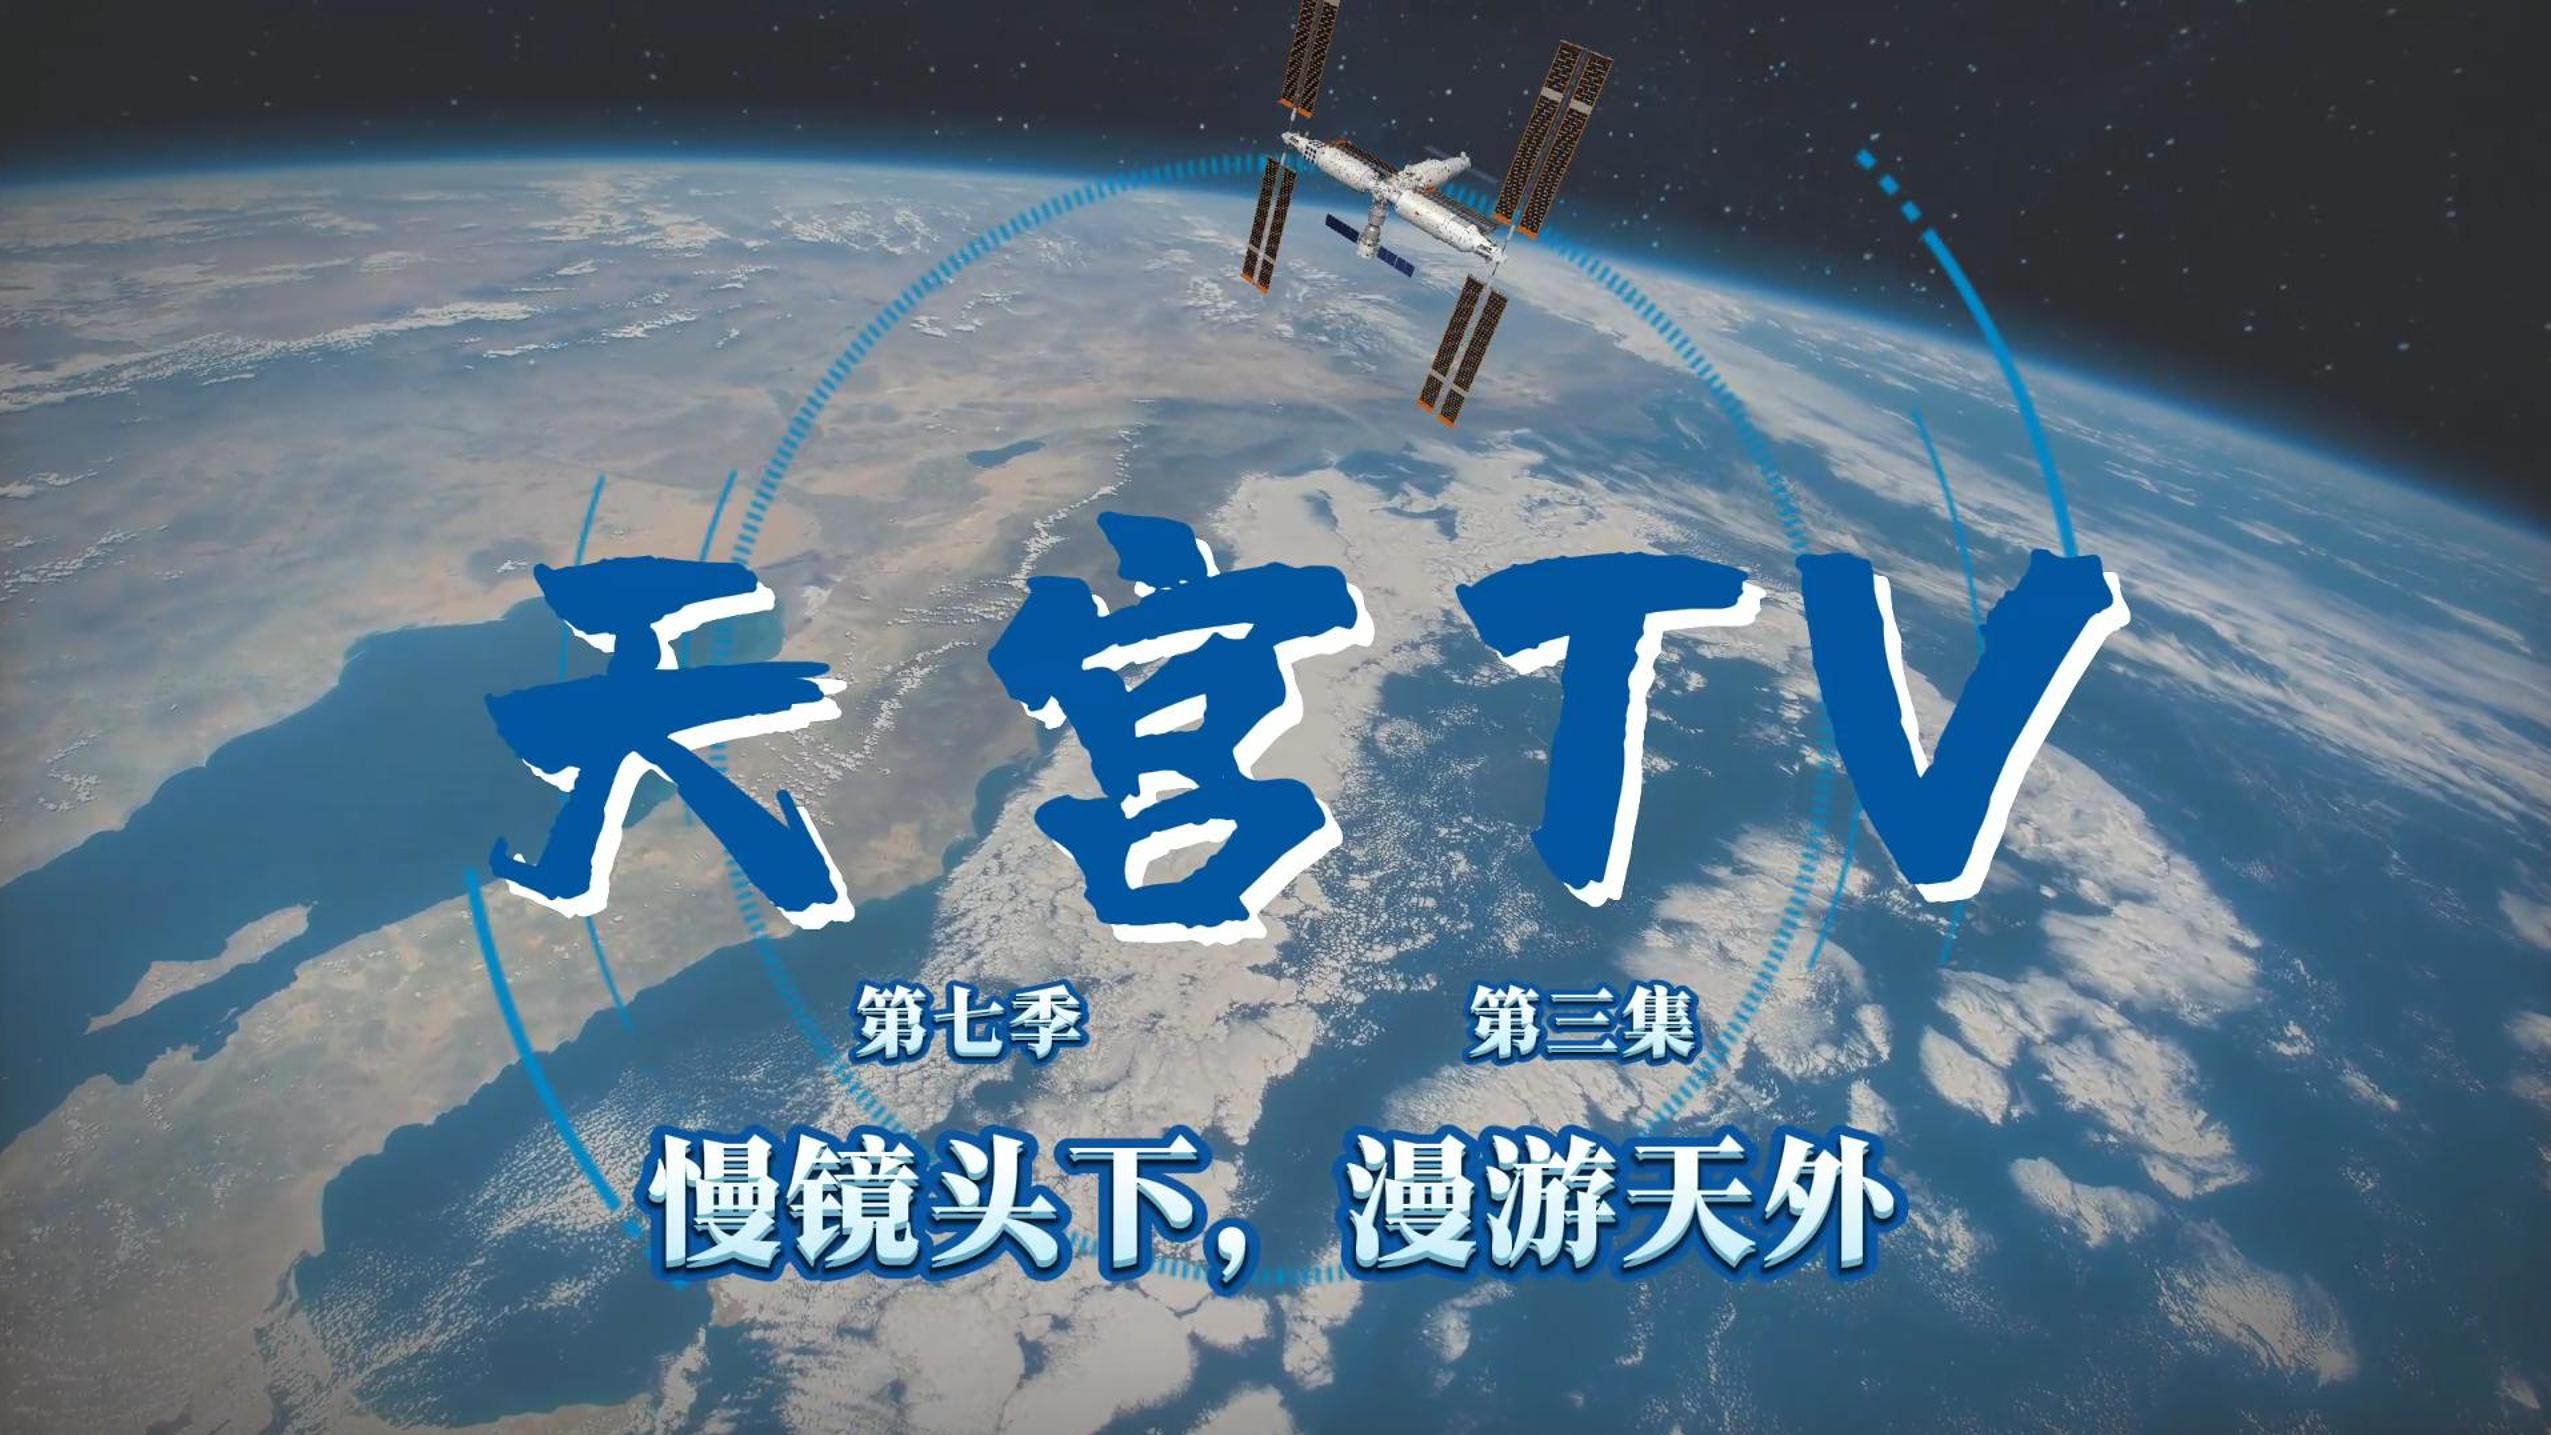 ส่อง 'พื้นโลก' หลากดินแดนจากมุมมองสถานีอวกาศจีน